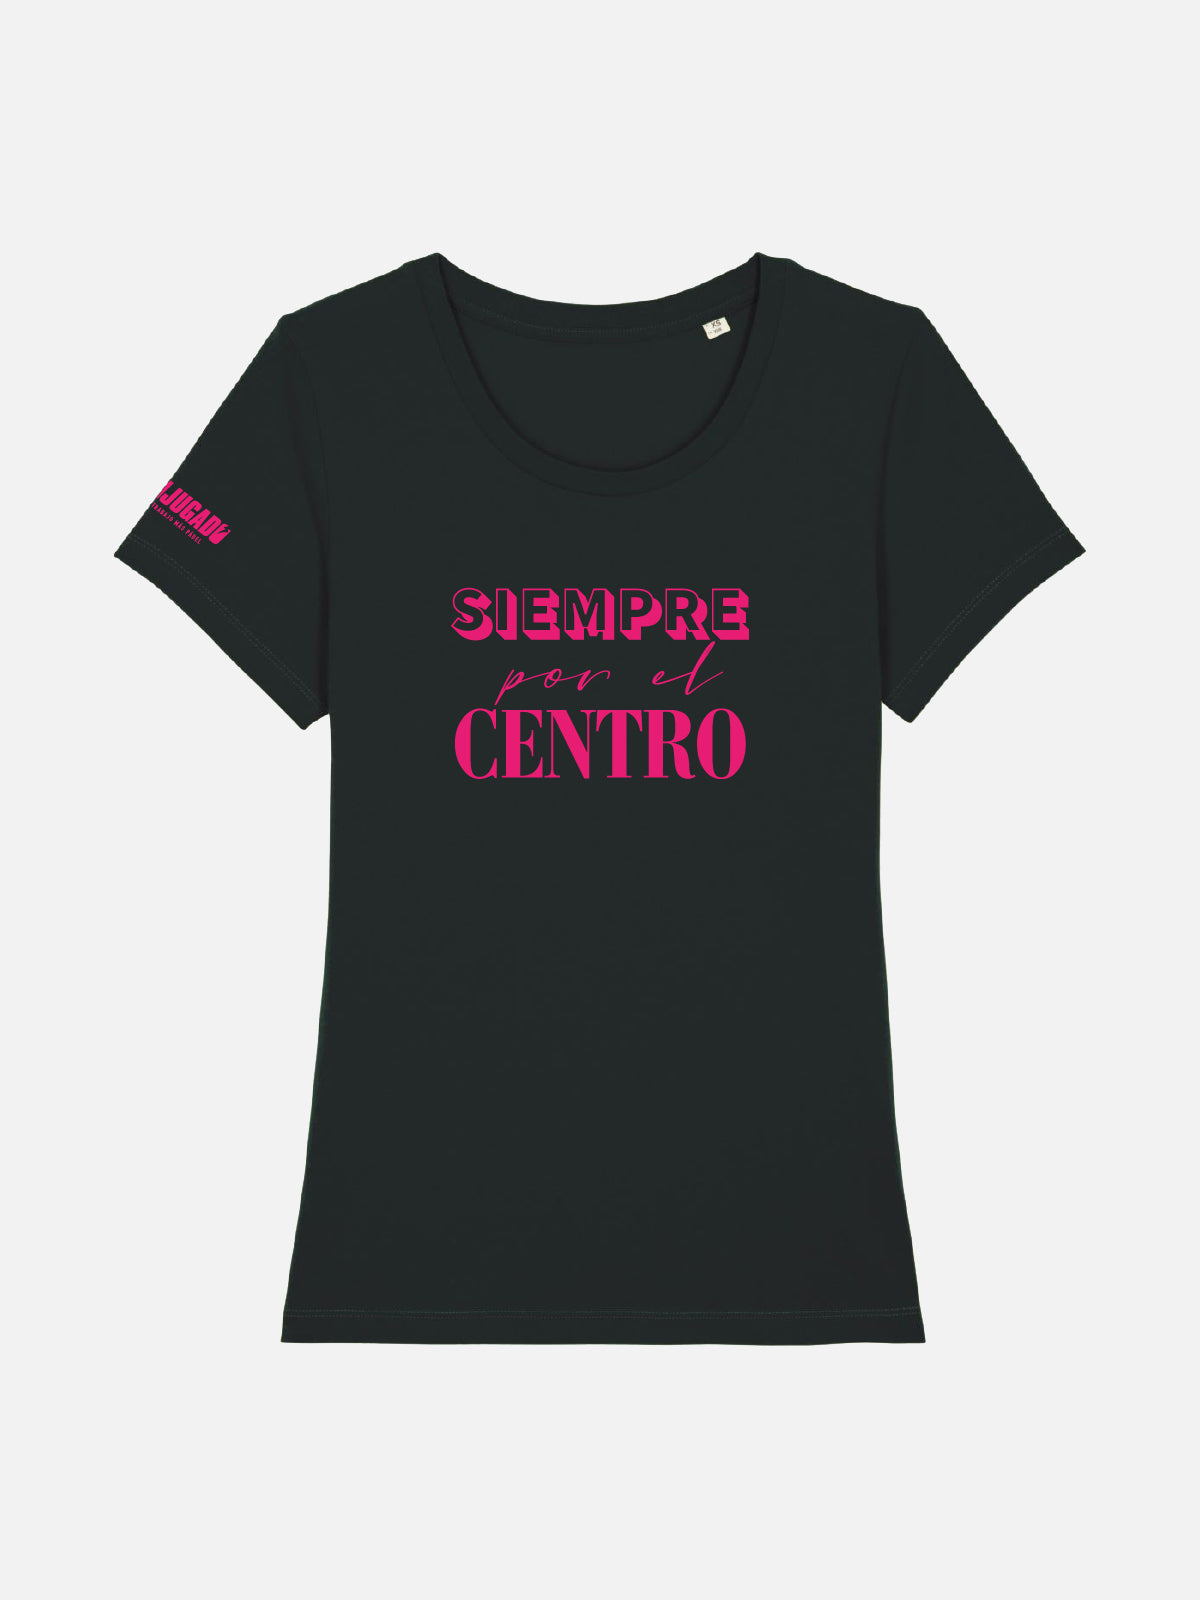 Women's Fun T-Shirt - Siempre Por El Centro